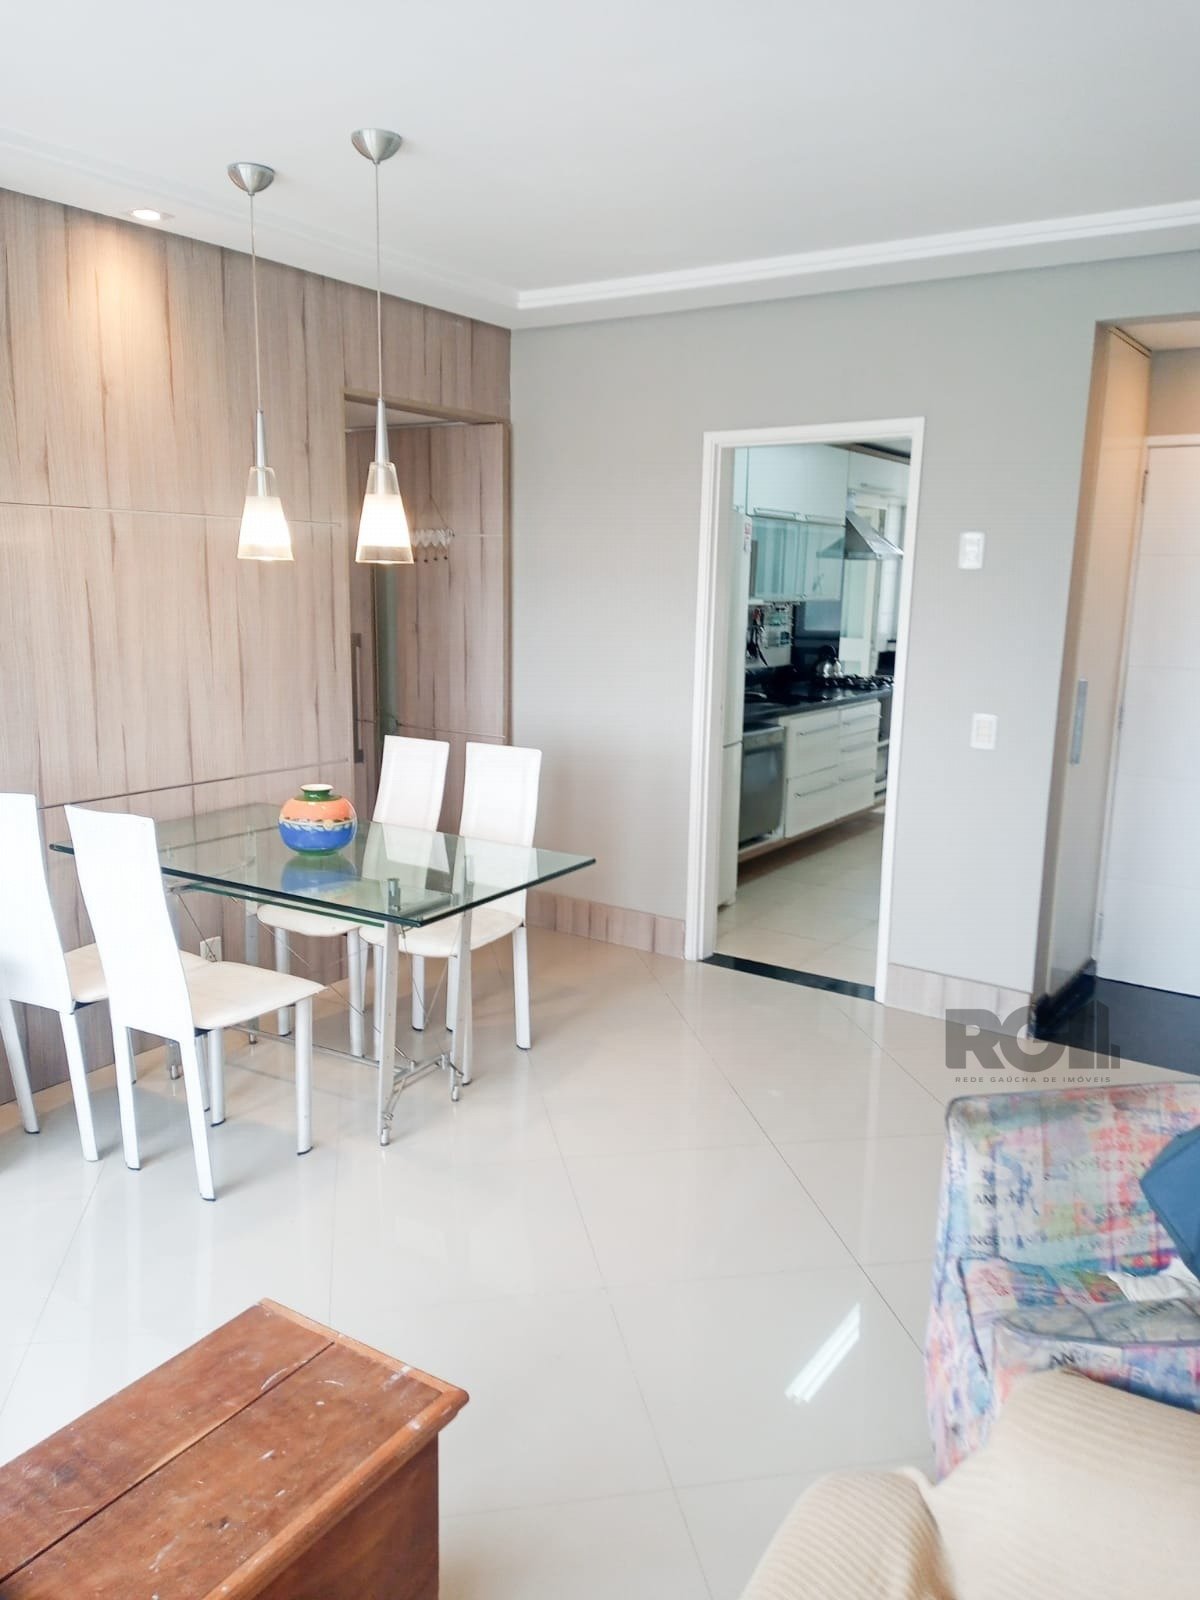 Apartamento com 96m², 3 dormitórios, 1 suíte no bairro Centro Histórico em Porto Alegre para Comprar